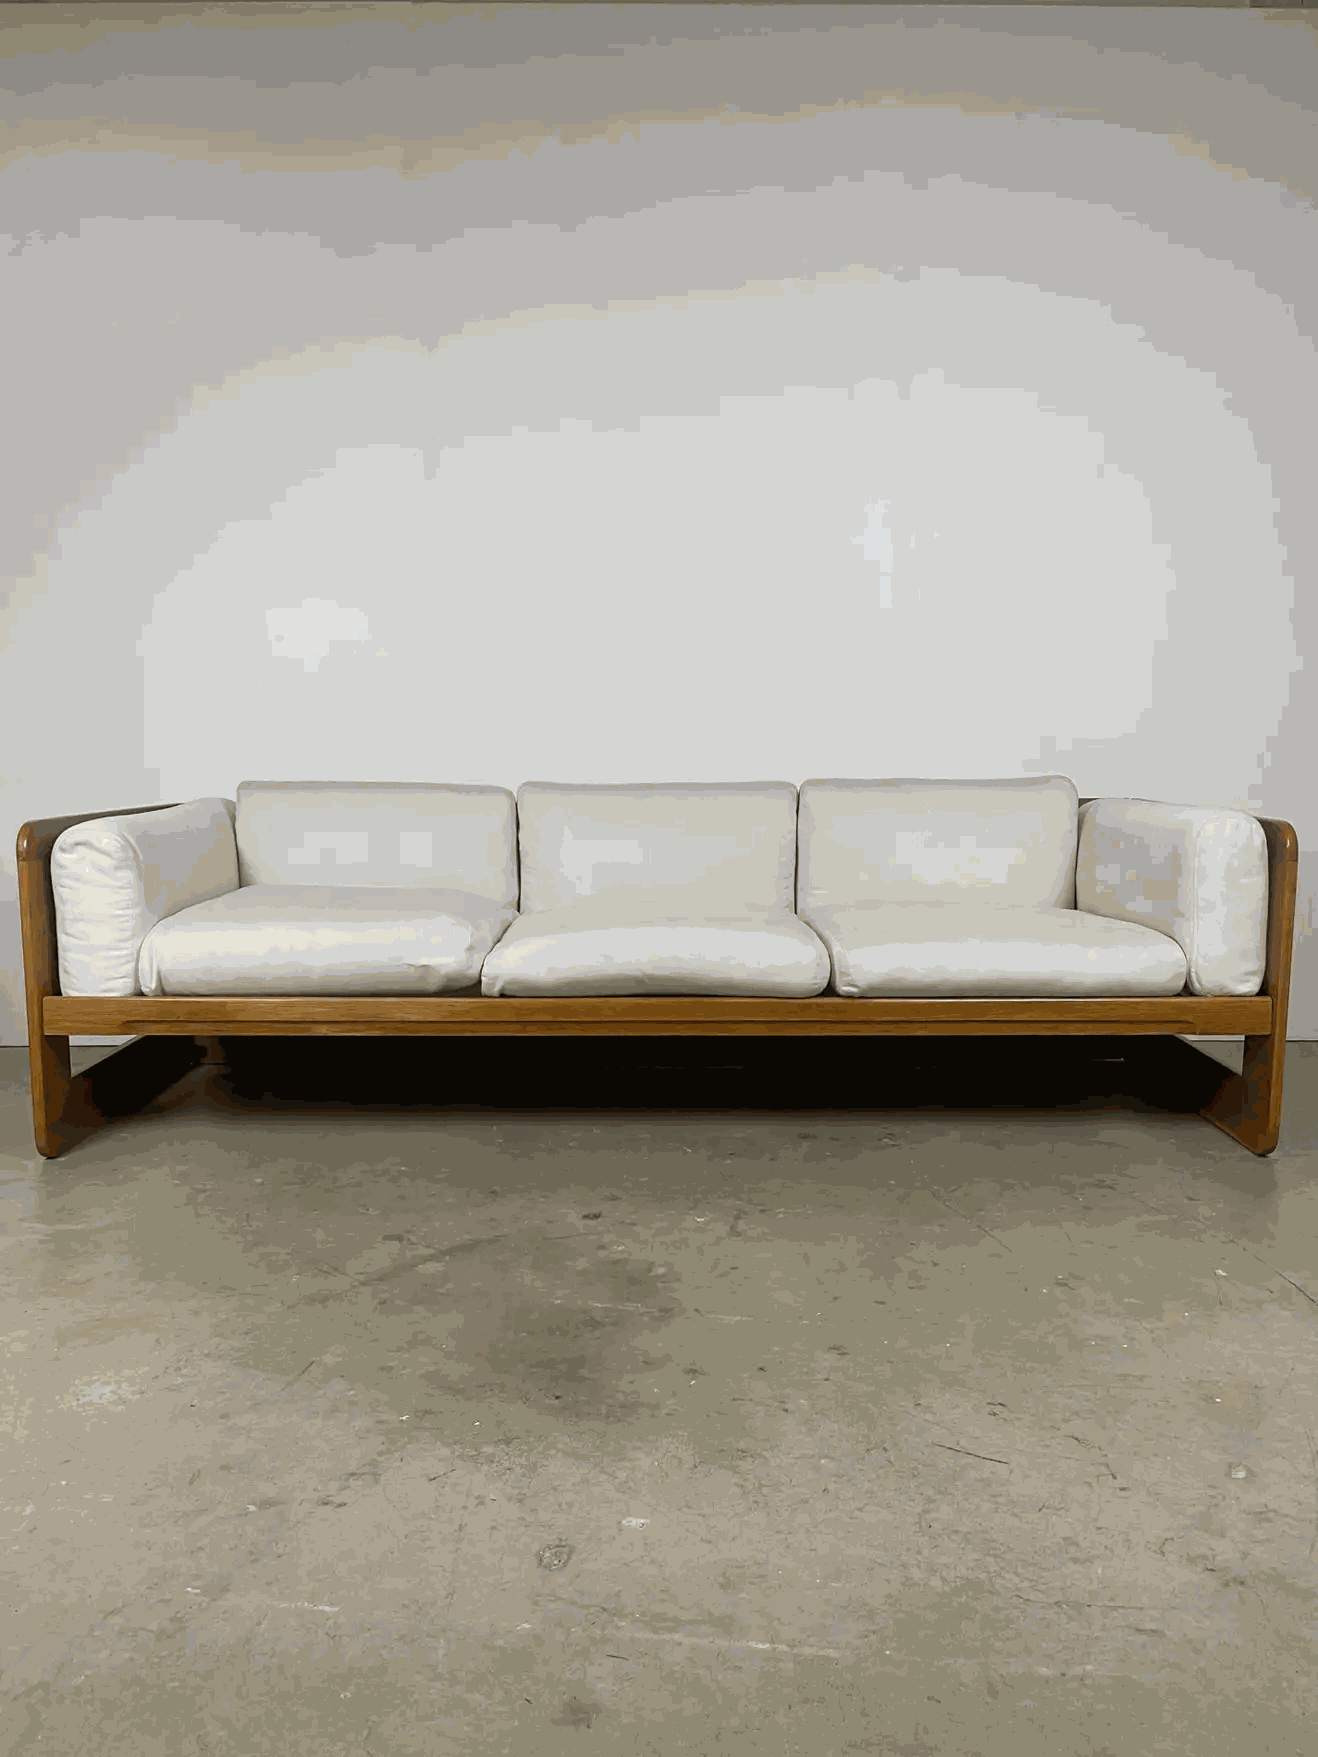 Bộ sofa gỗ Sồi (Oak) mang phong cách hoàng gia và tách rời nhau giúp dễ dàng bố trí một cách linh hoạt tùy vào sở thích cũng như không gian căn phòng 